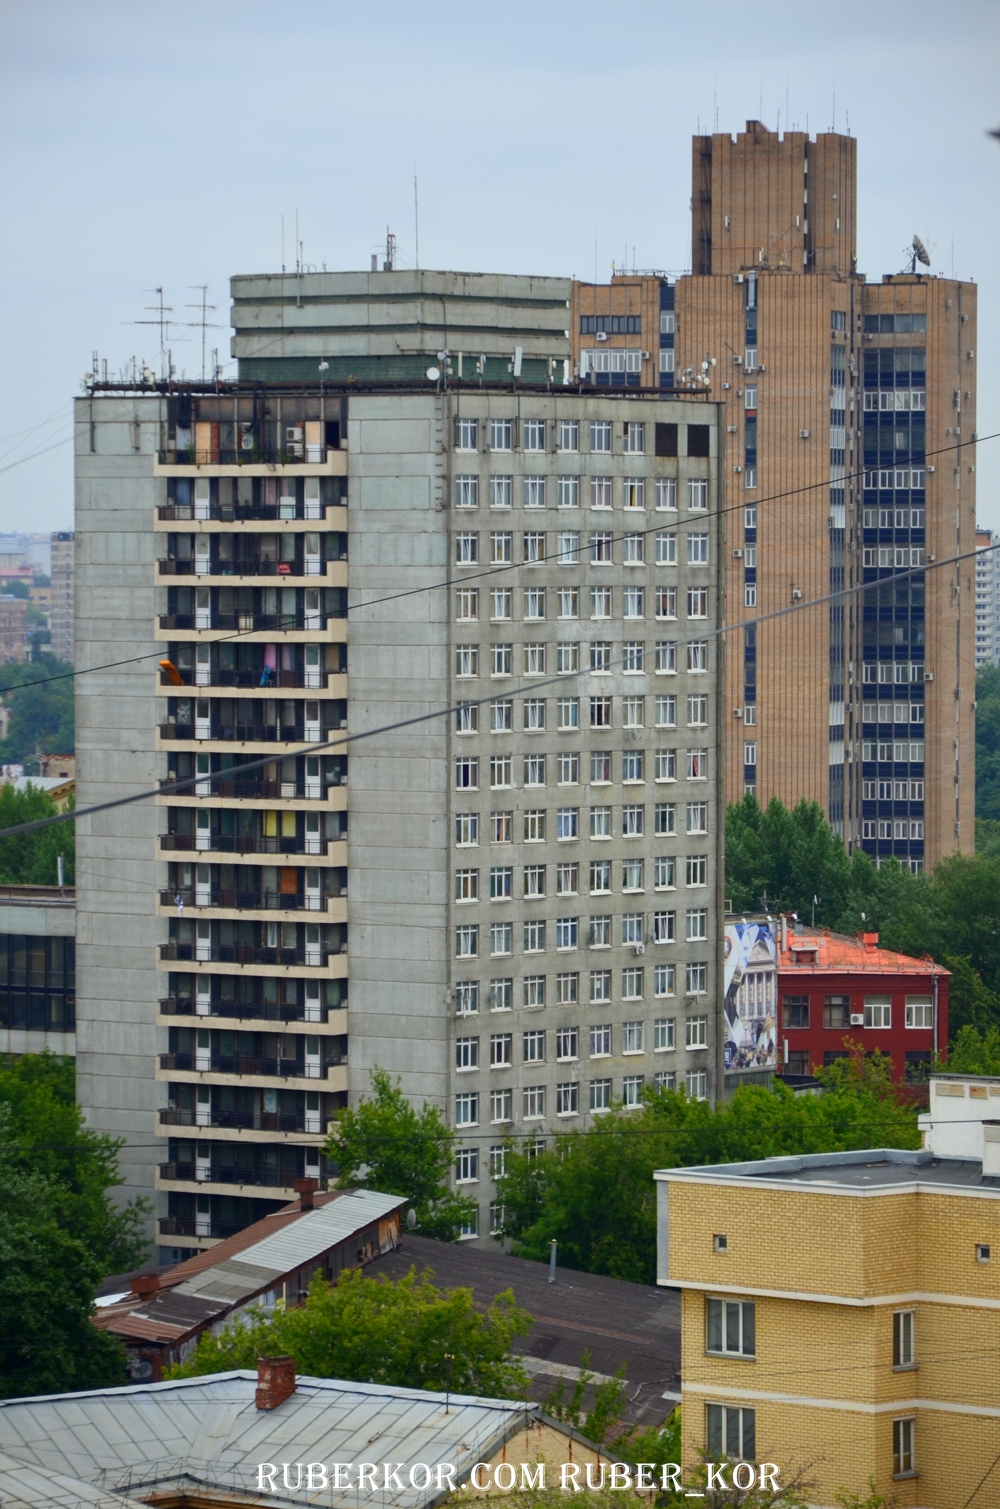 Виды с Крышт жилого дома с рекламным щитом Peugeot Москва 2014г.